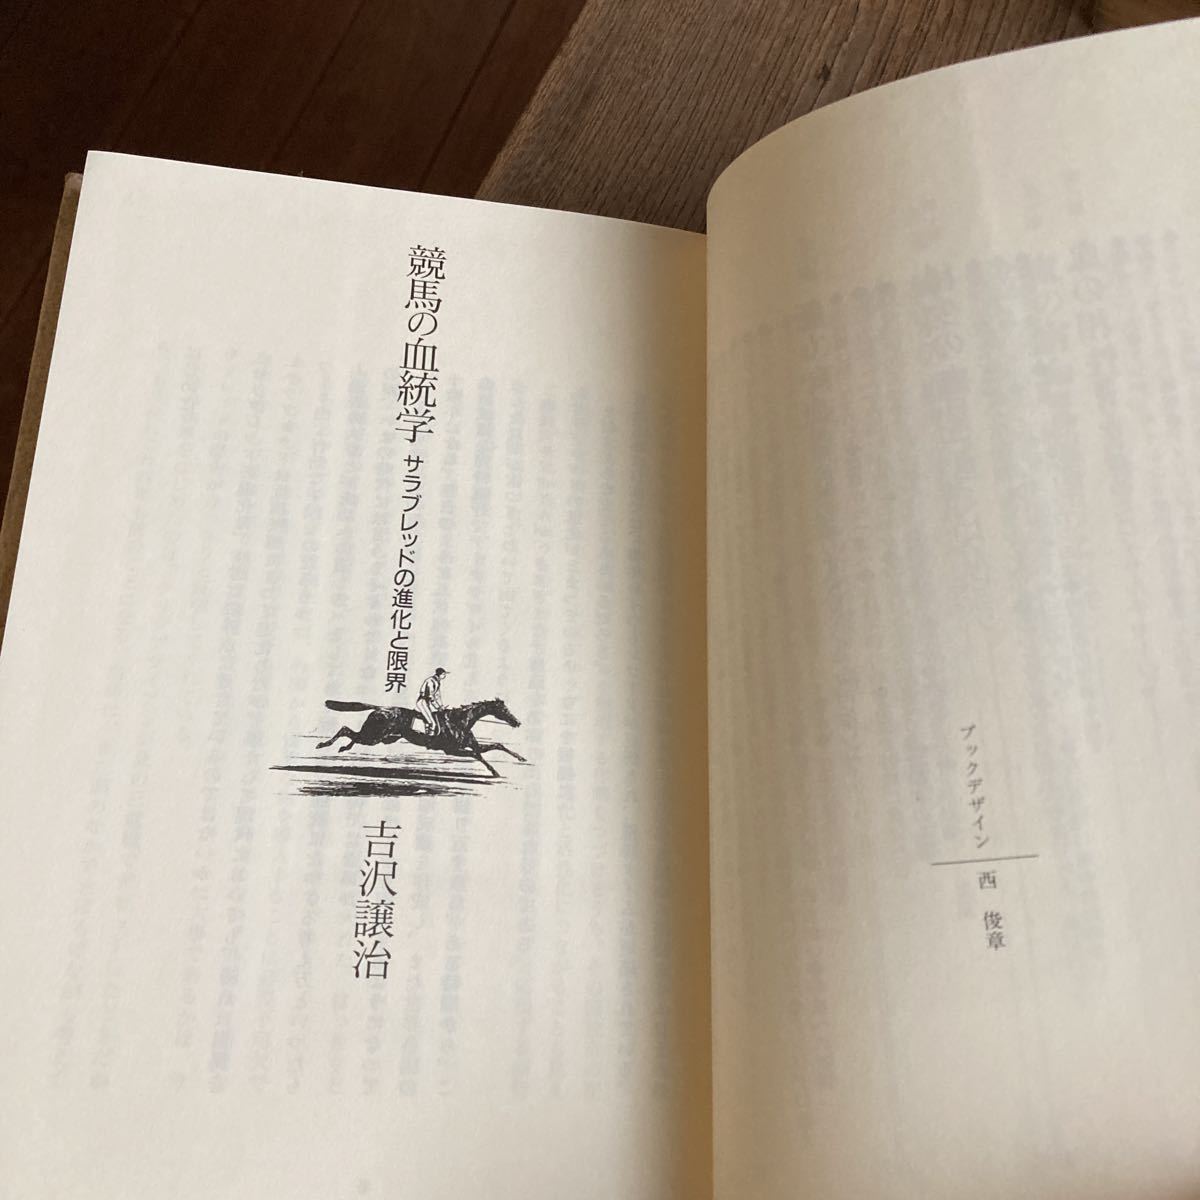 受賞作 競馬の血統学 吉沢譲治 1997年 4刷 帯付き 競馬 馬 研究書 クリックポスト_画像6